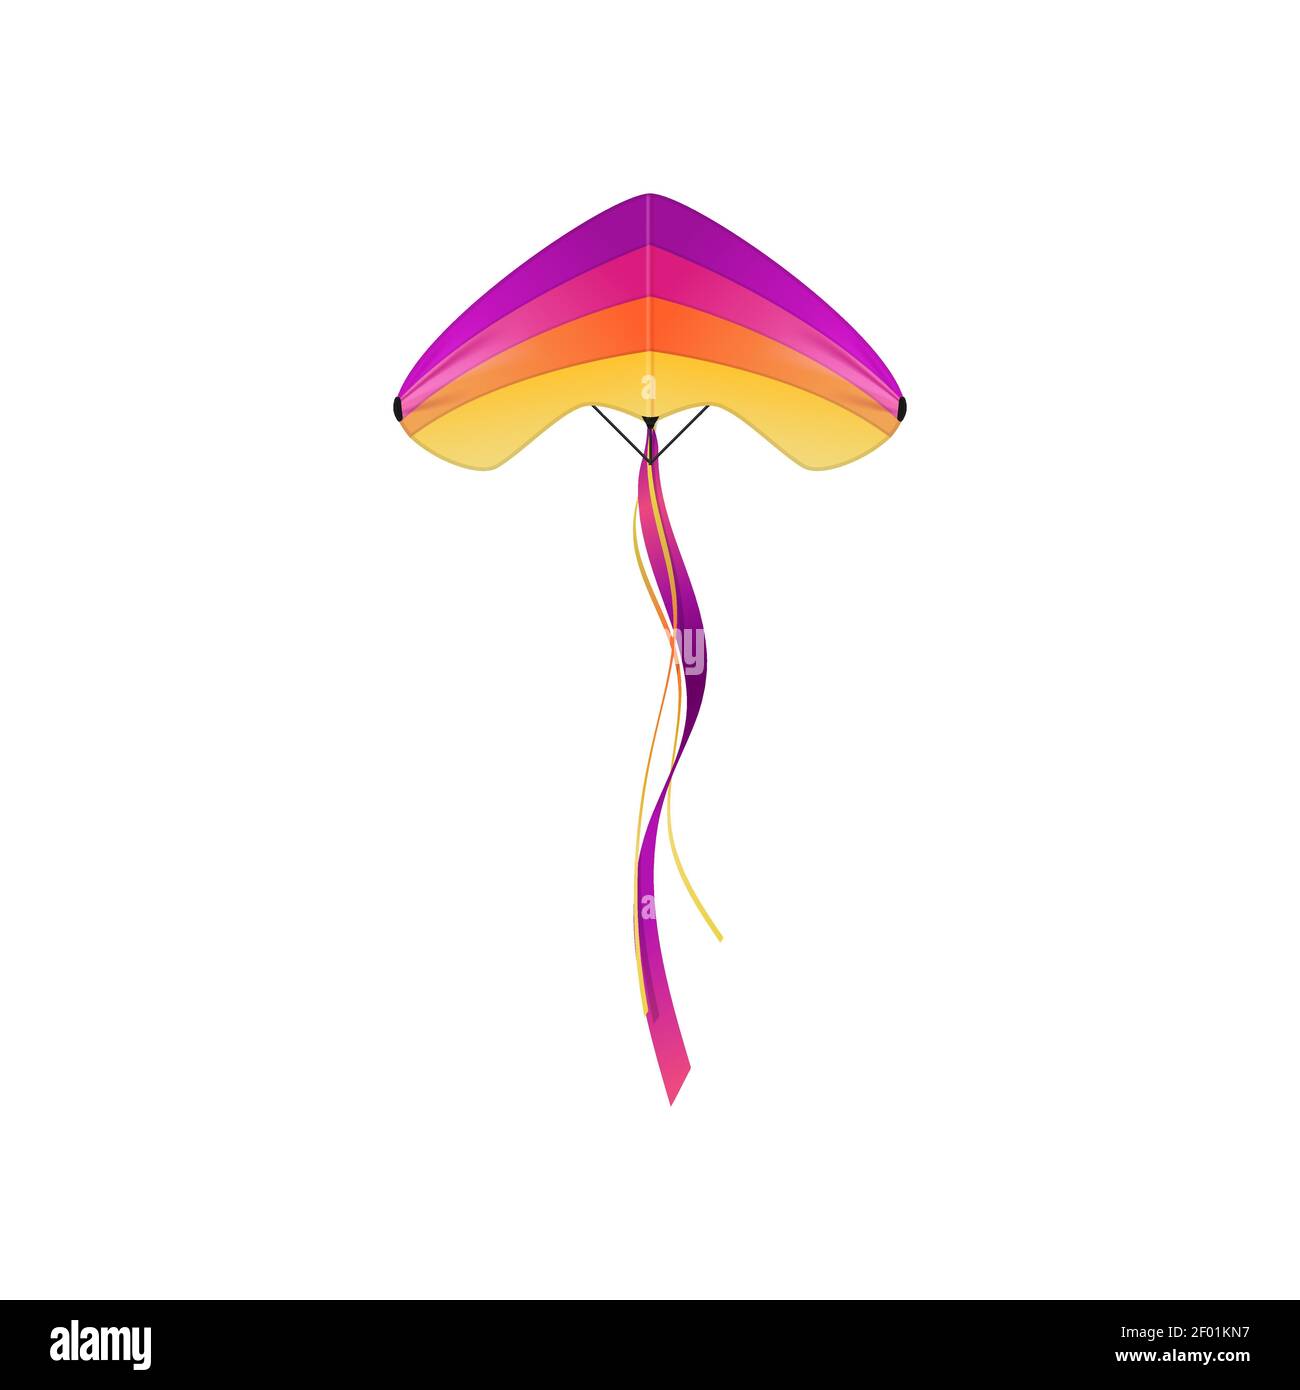 Regenbogen Drachen Kite Für Kinder Outdoor Spiele Sommer Geschenk Gift DE STOCK 